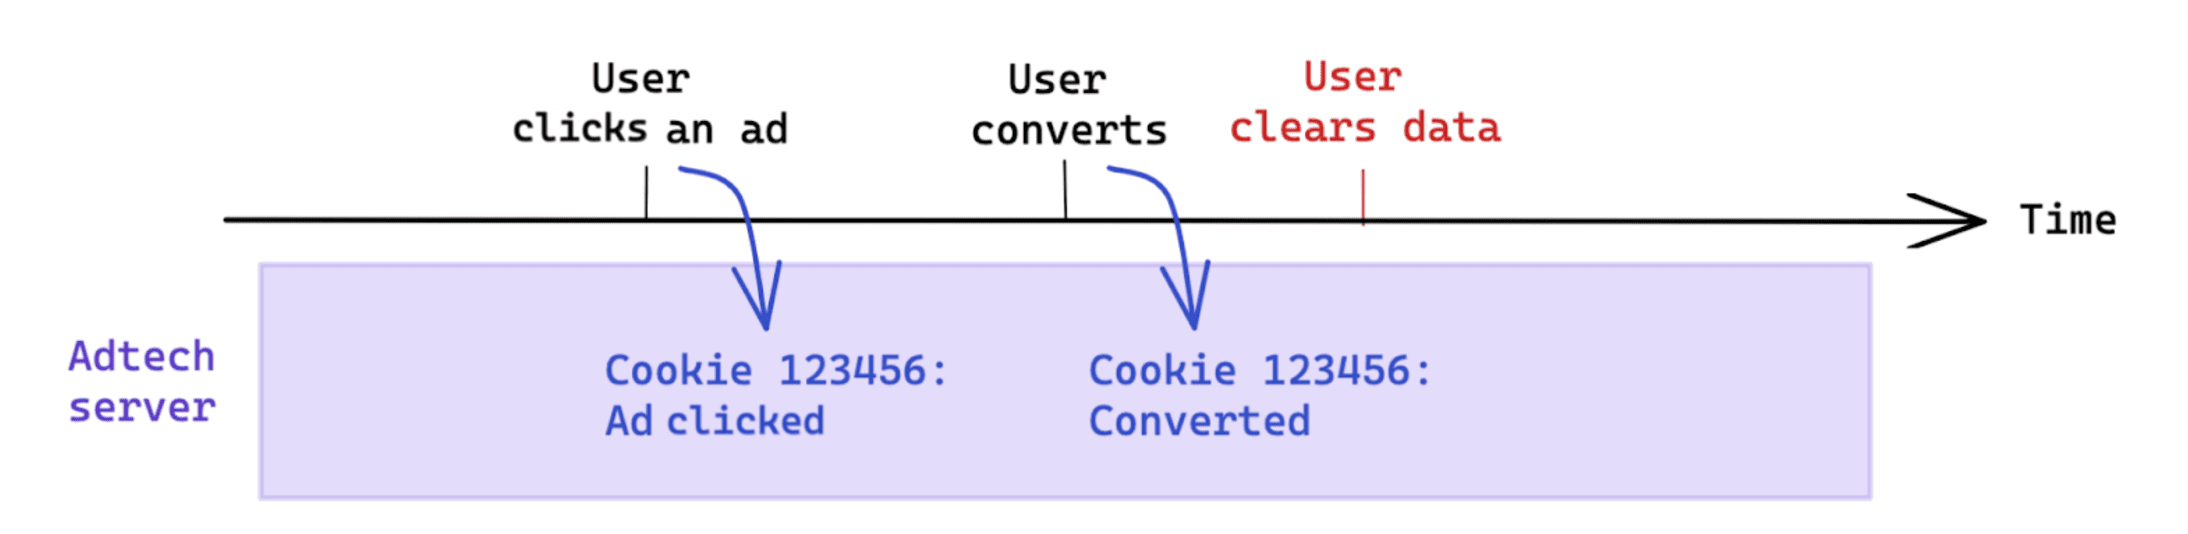 ניקוי נתונים ביוזמת המשתמש אחרי המרה לא משפיע על מדידה המבוססת על קובצי cookie.